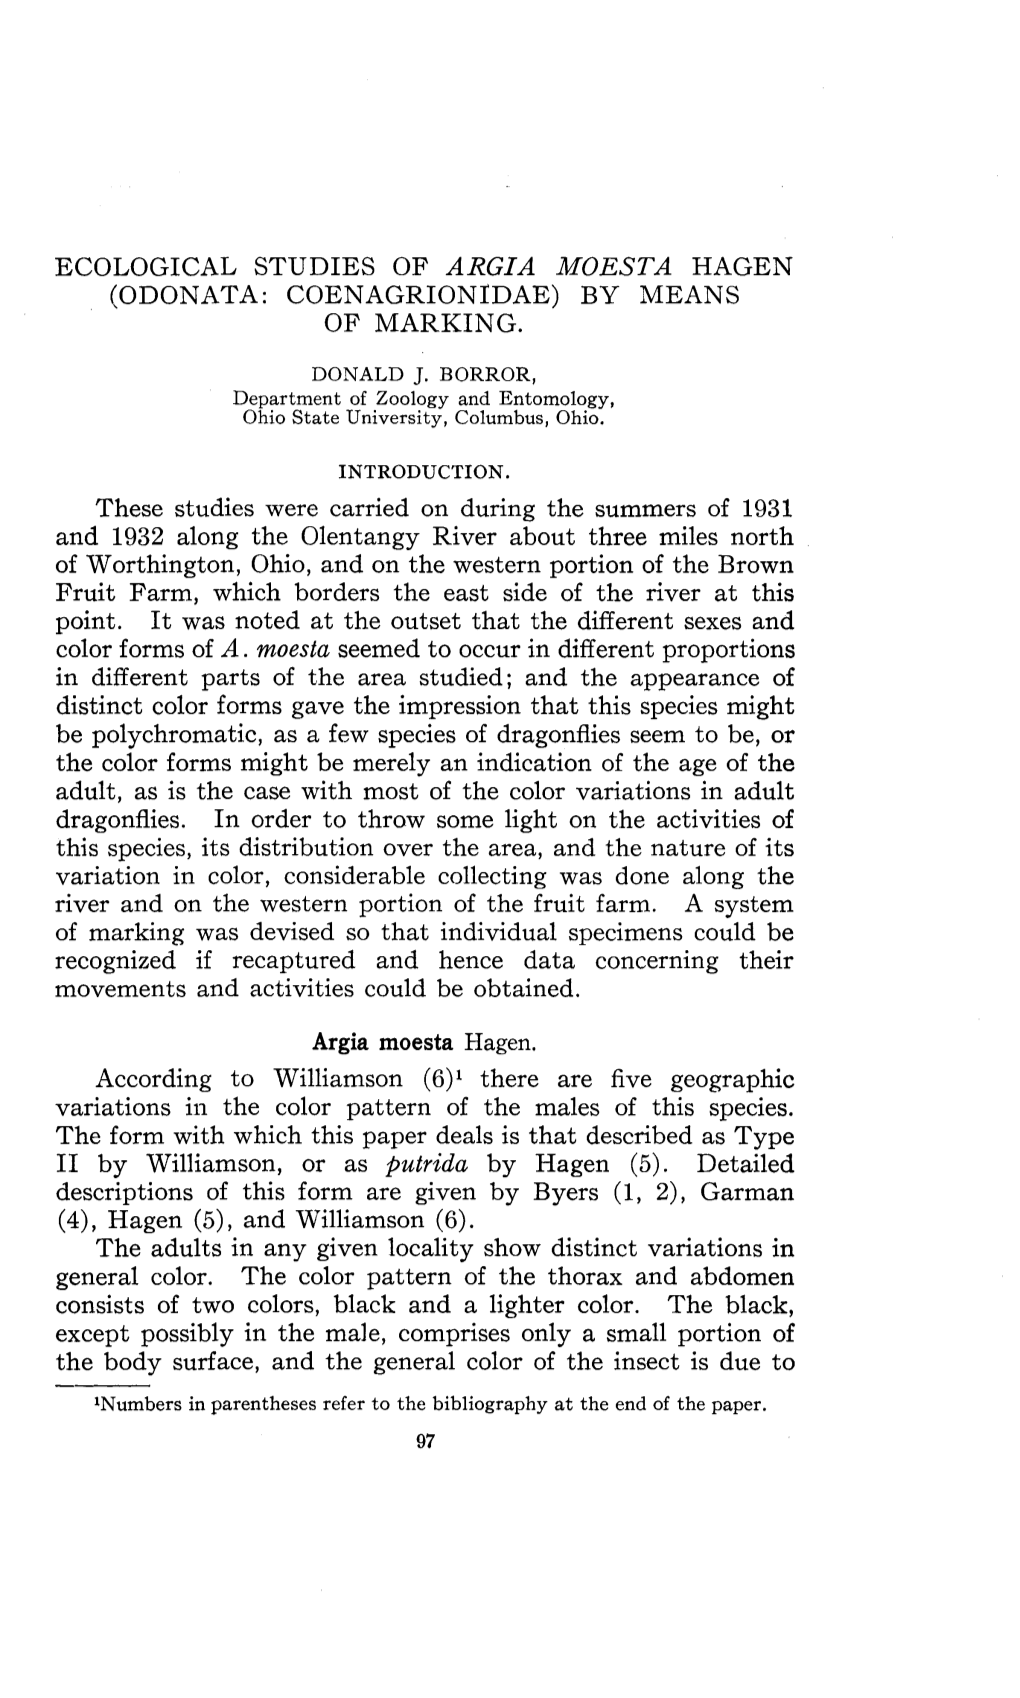 ECOLOGICAL STUDIES of ARGIA MOESTA HAGEN (ODONATA: Coenagrionldae) by MEANS of MARKING